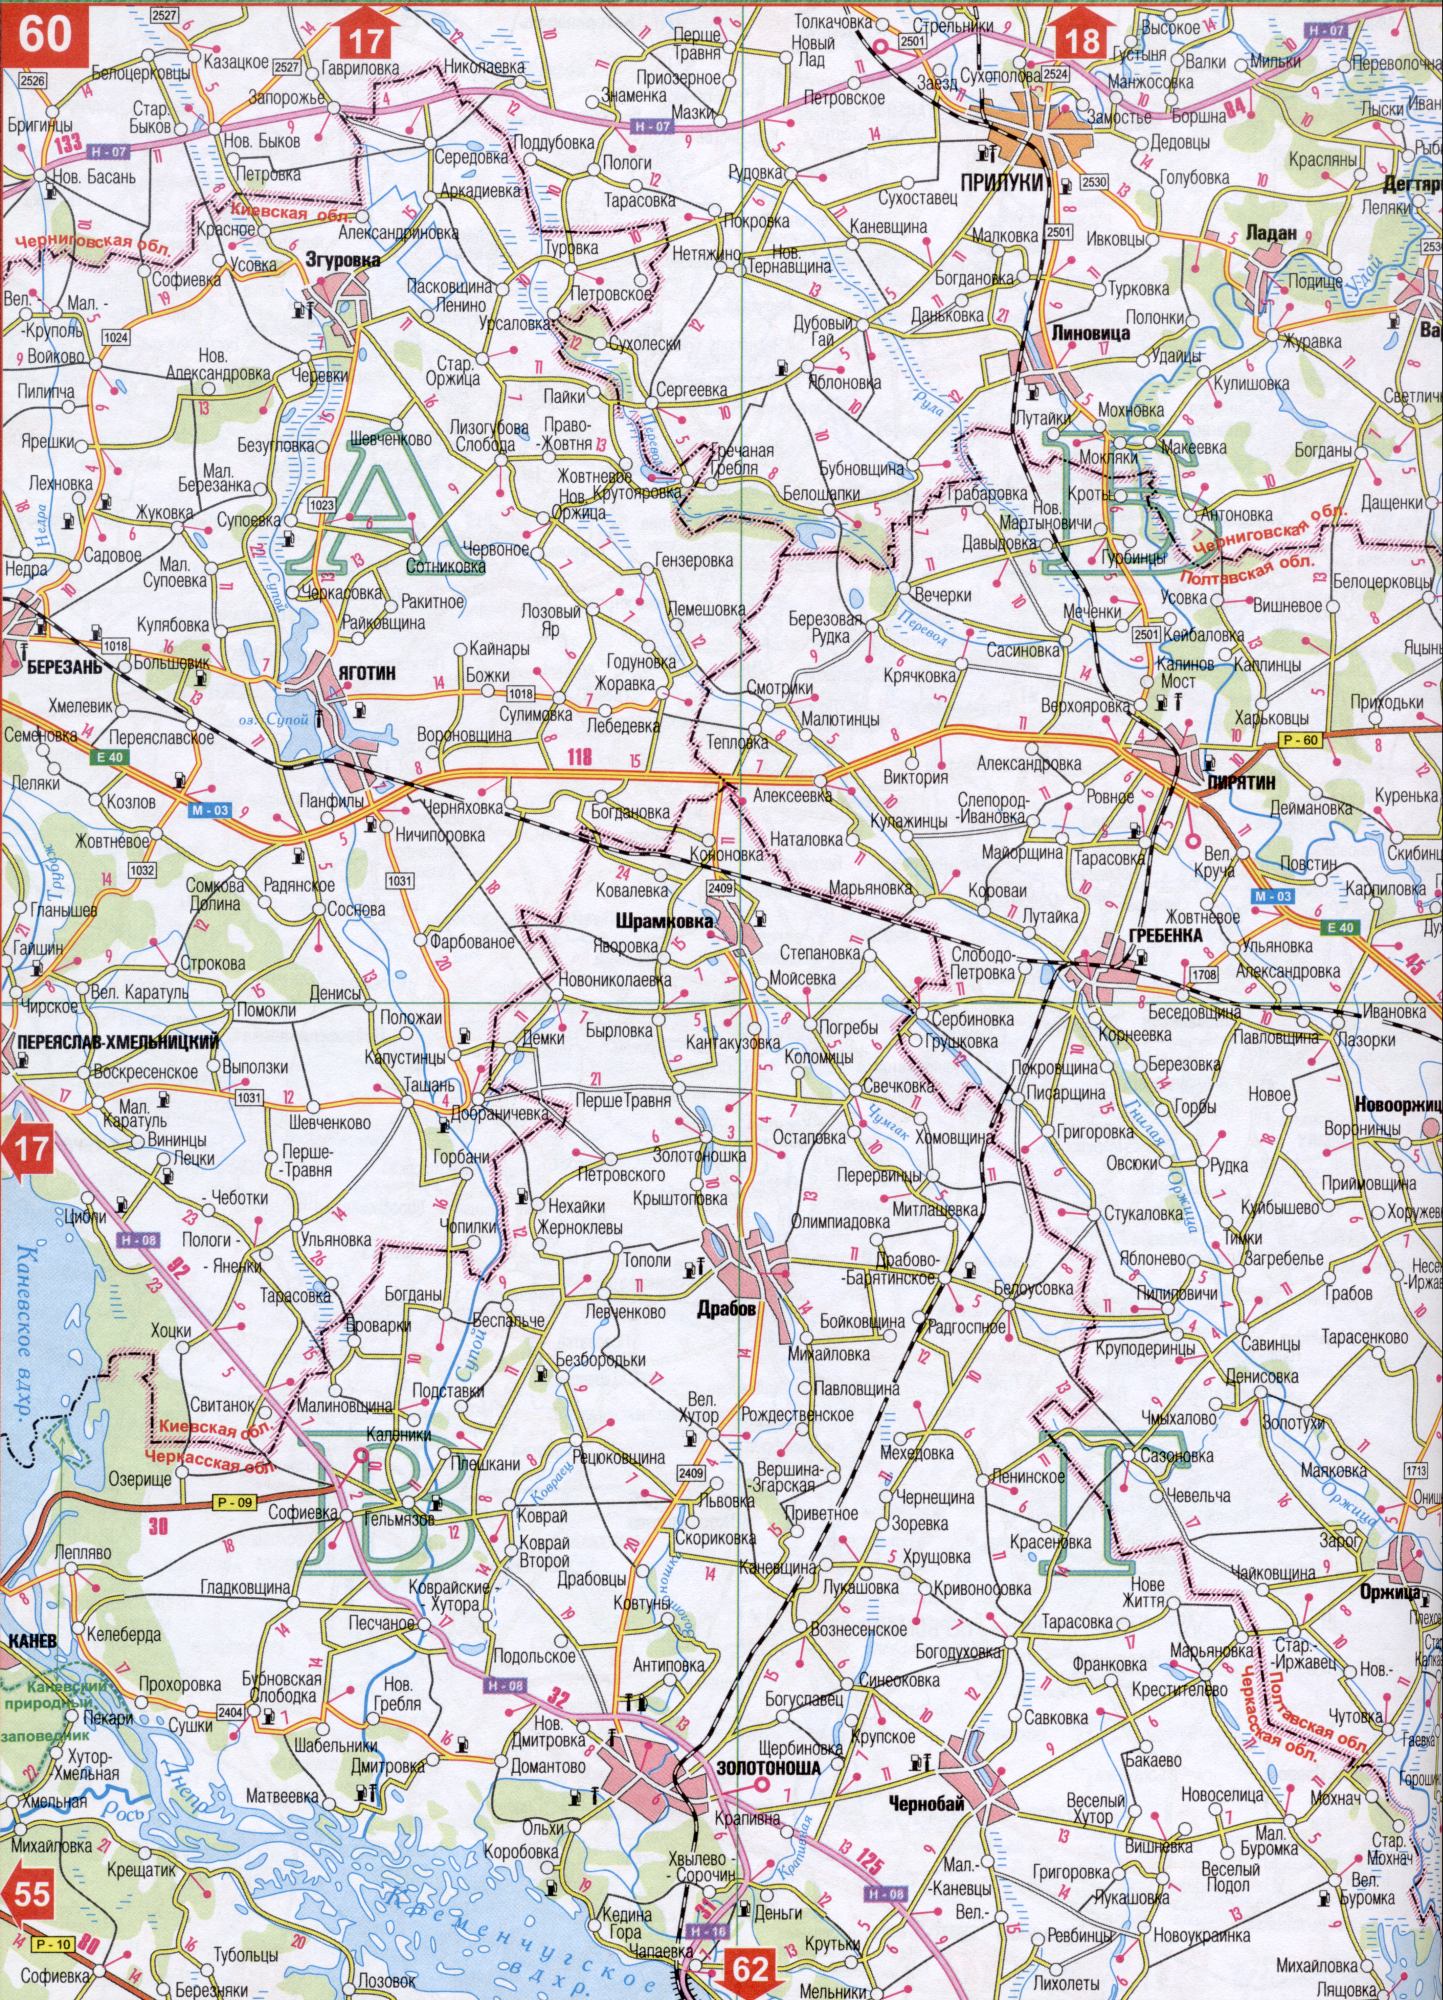 Карта Черкаської області Україна (обласний центр м.Черкаси). Завантажити безкоштовно докладну карту автомобільних доріг, B0 - Рось, Оржиця